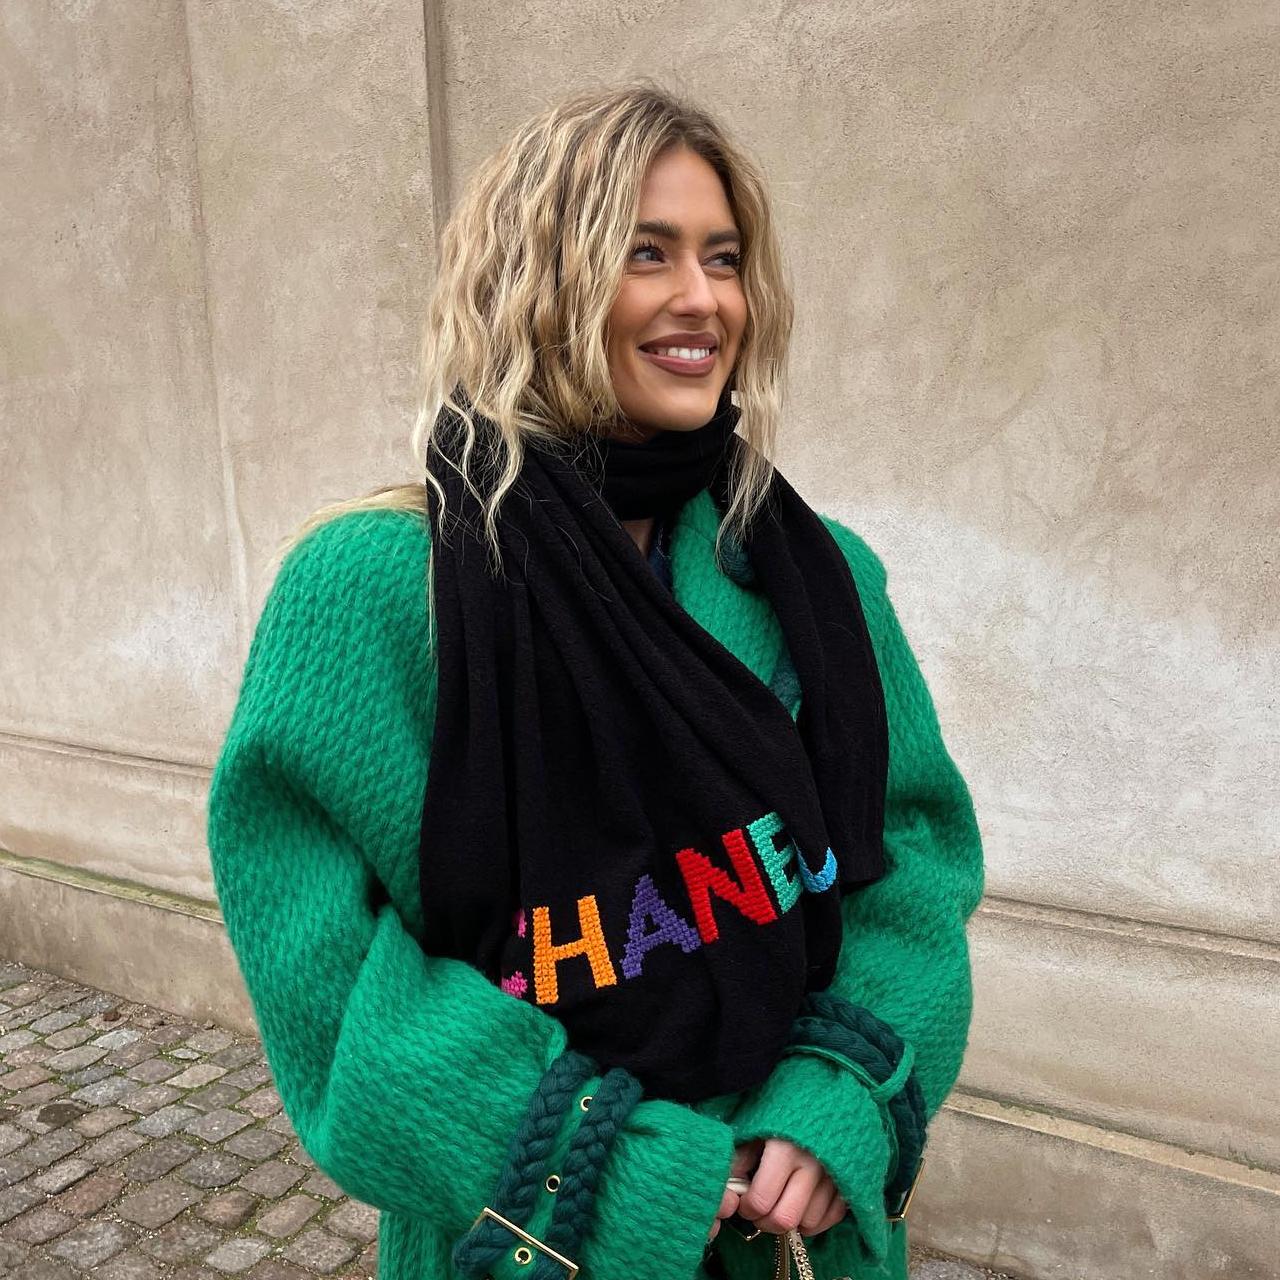 La influencer Emili Sindlev posa mirado hacia un lado con ropa de invierno, el pelo ondulado y un maquillaje natural dejando ver los dientes al sonreir